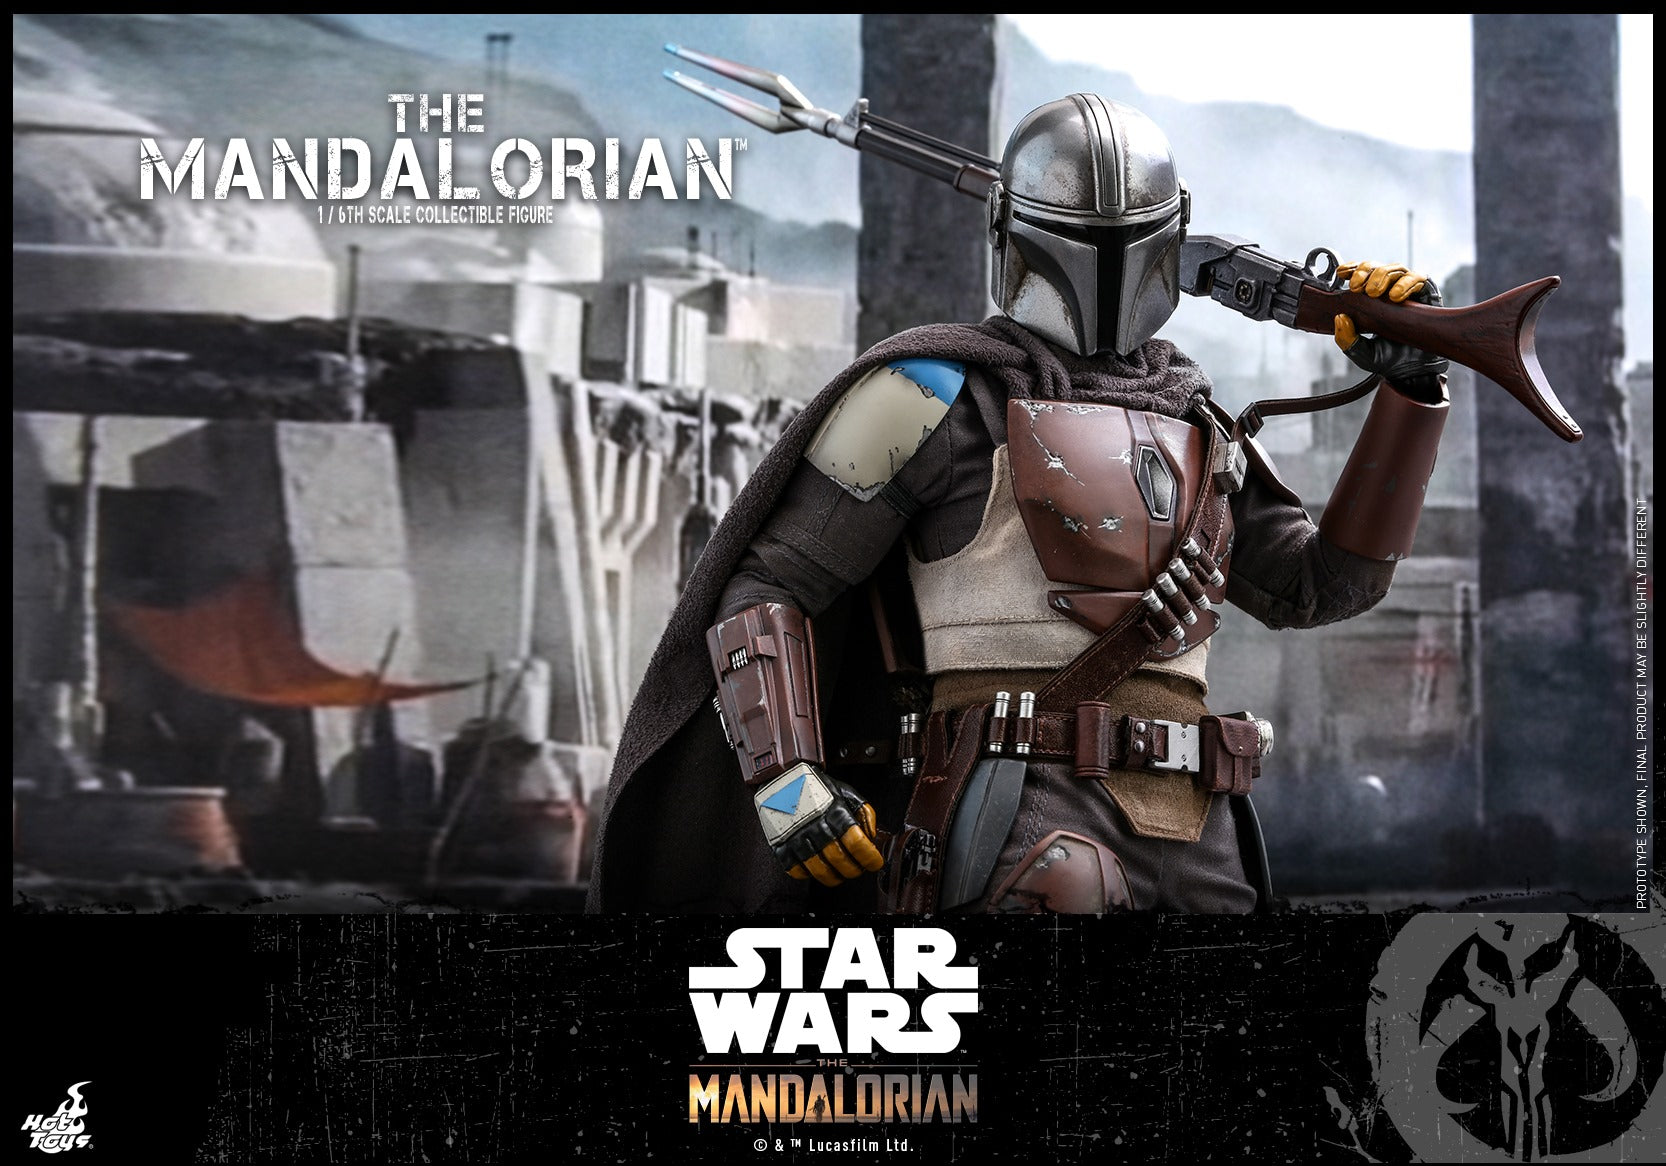 Hot Toys - TMS007 - Star Wars: The Mandalorian - The Mandalorian - Marvelous Toys